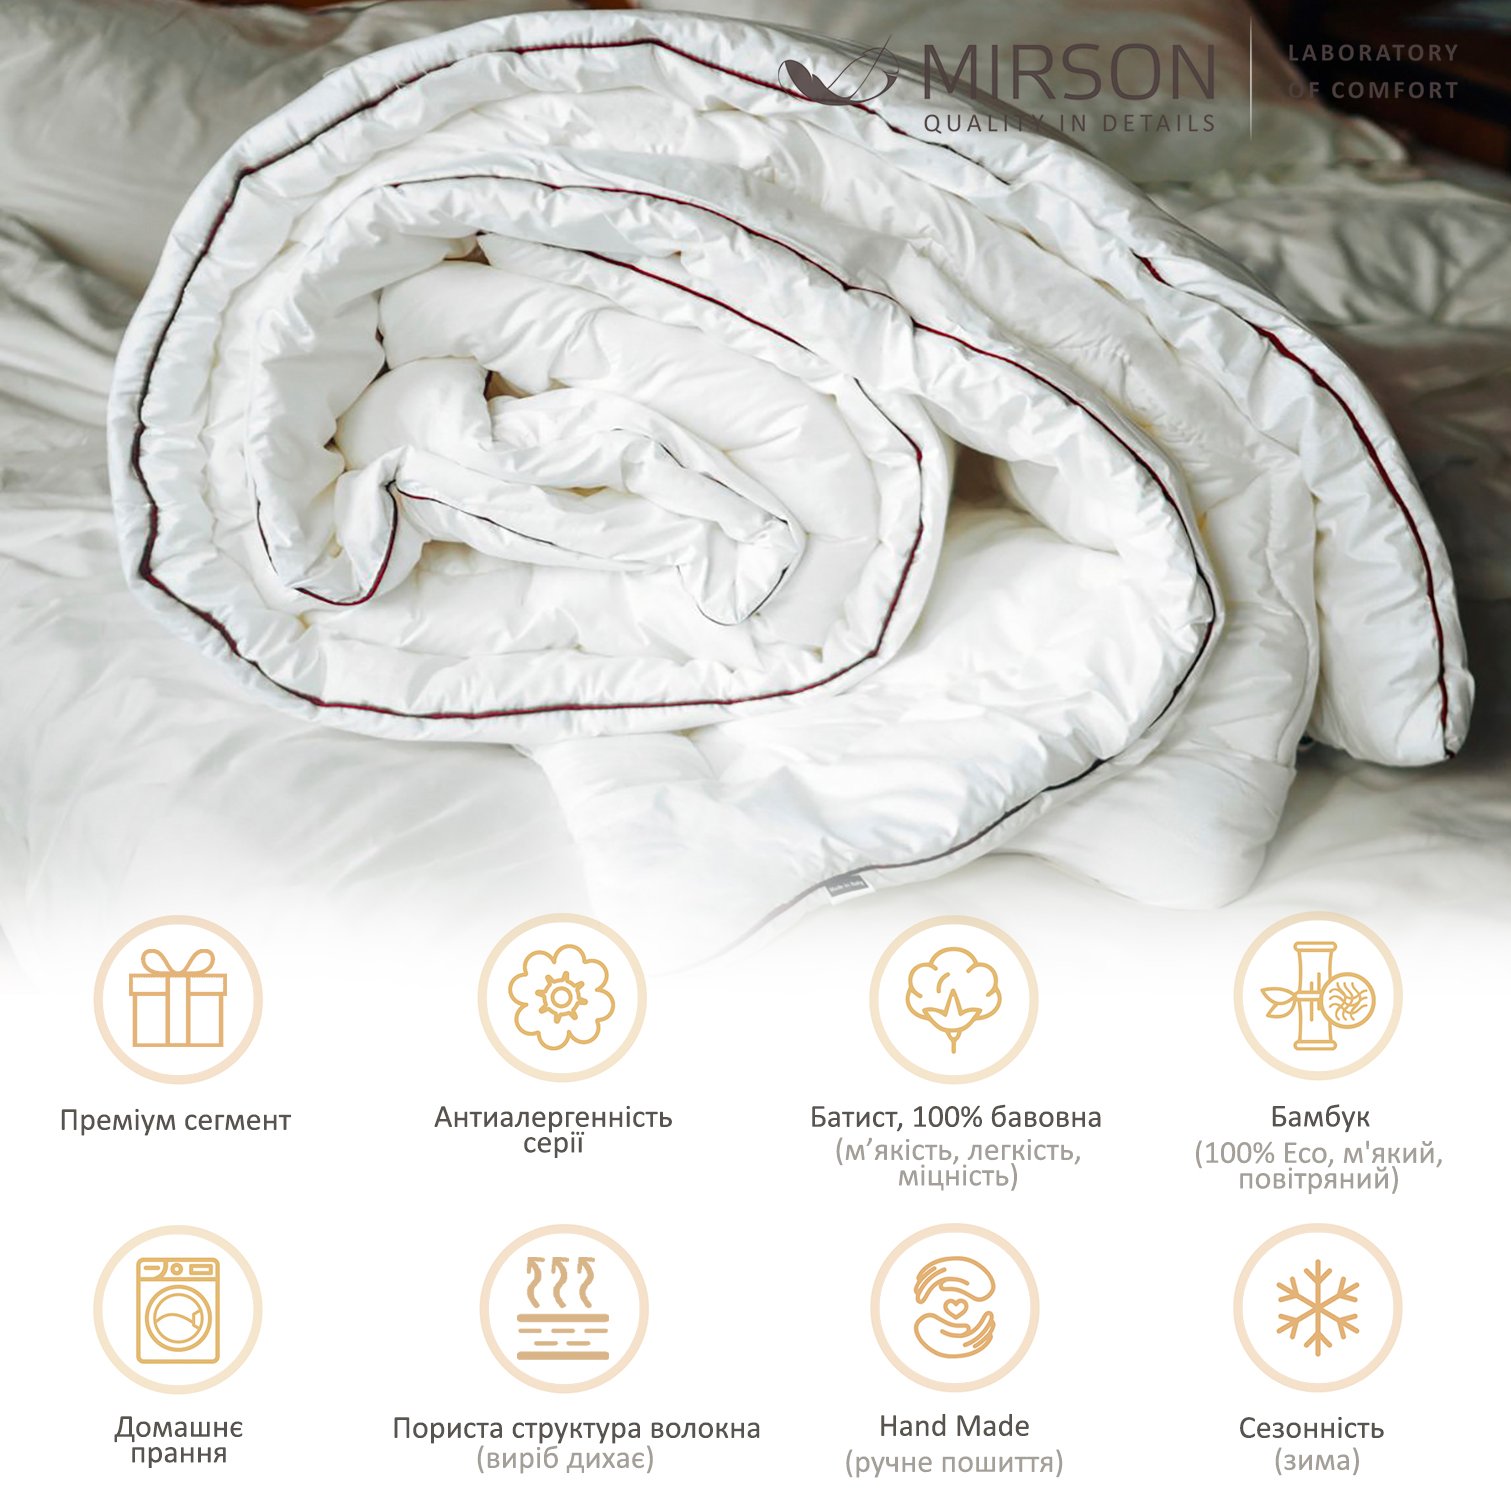 Одеяло бамбуковое MirSon Deluxe Hand Made №0446, зимнее, 110x140 см, белое - фото 5